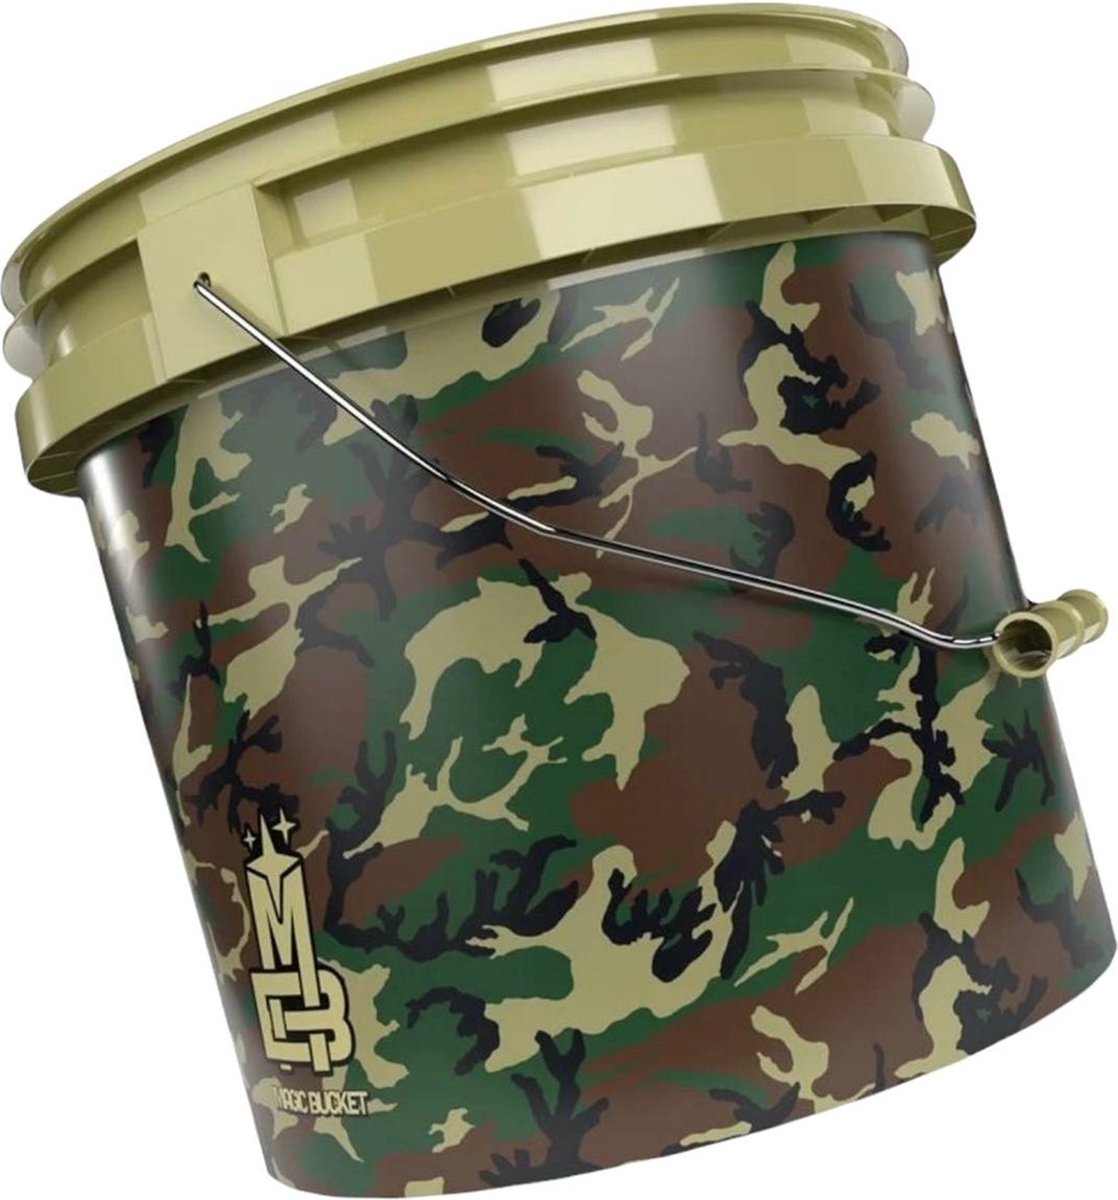 Emmer Magic Bucket Camouflage Groen 13 liter